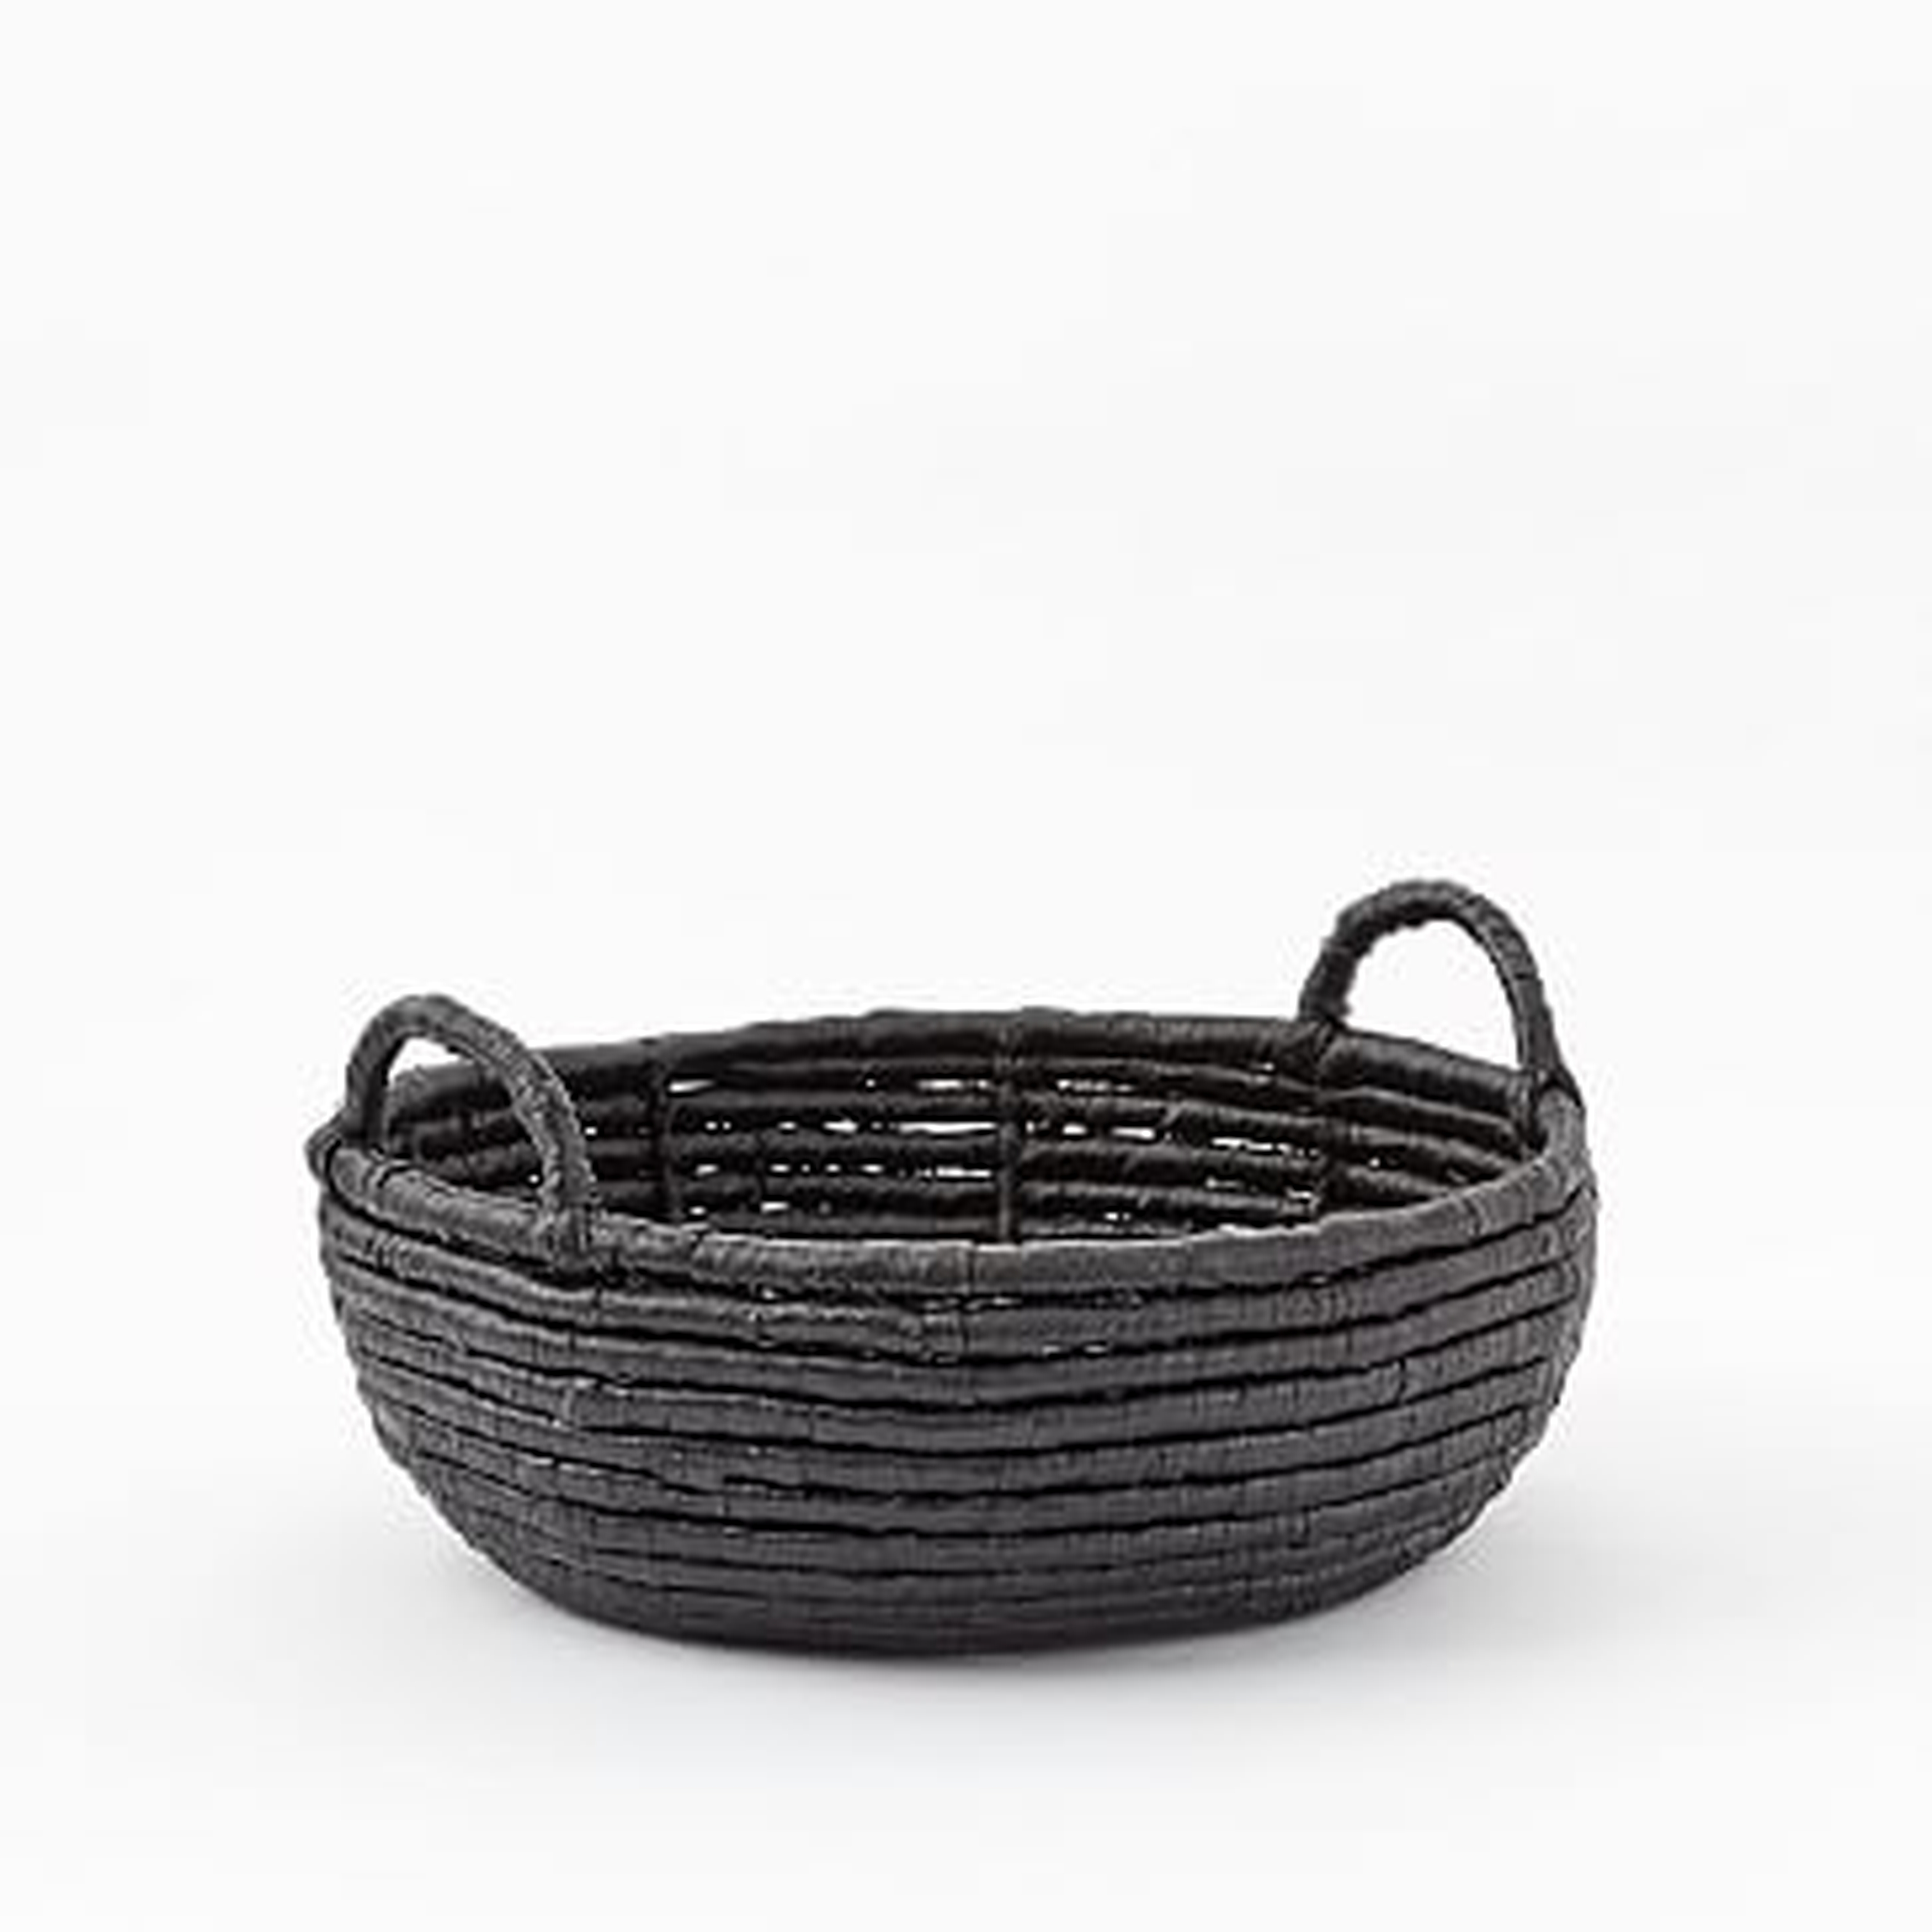 Woven Seagrass Baskets, Black, Round Centerpiece - West Elm